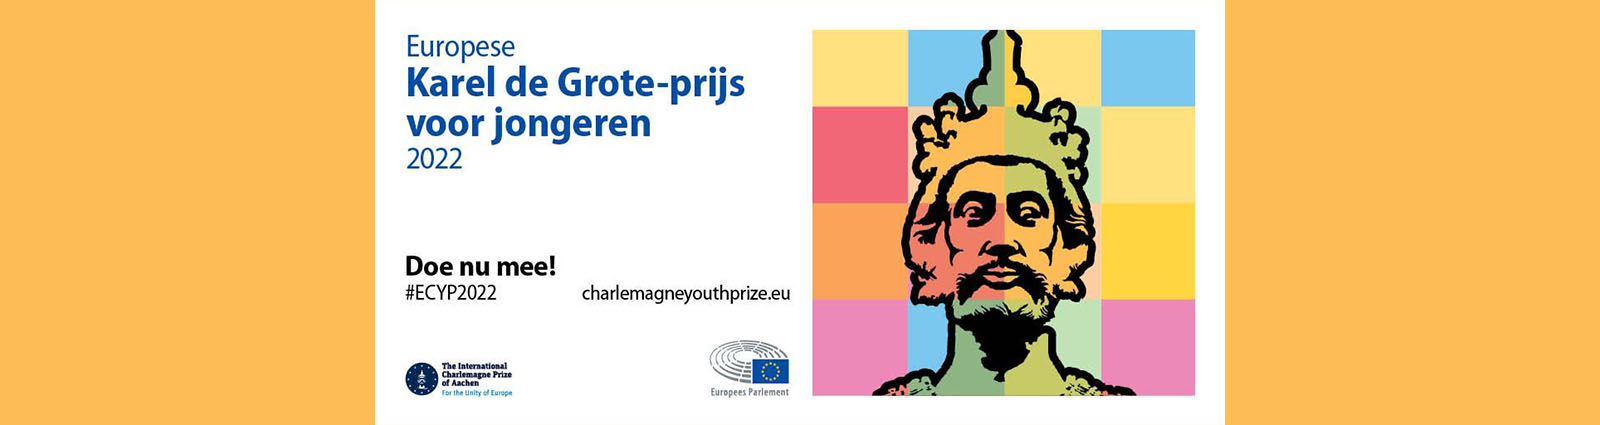 Win € 7500,- met de Europese Karel de Grote-prijs voor jongeren! (#ECYP2022)